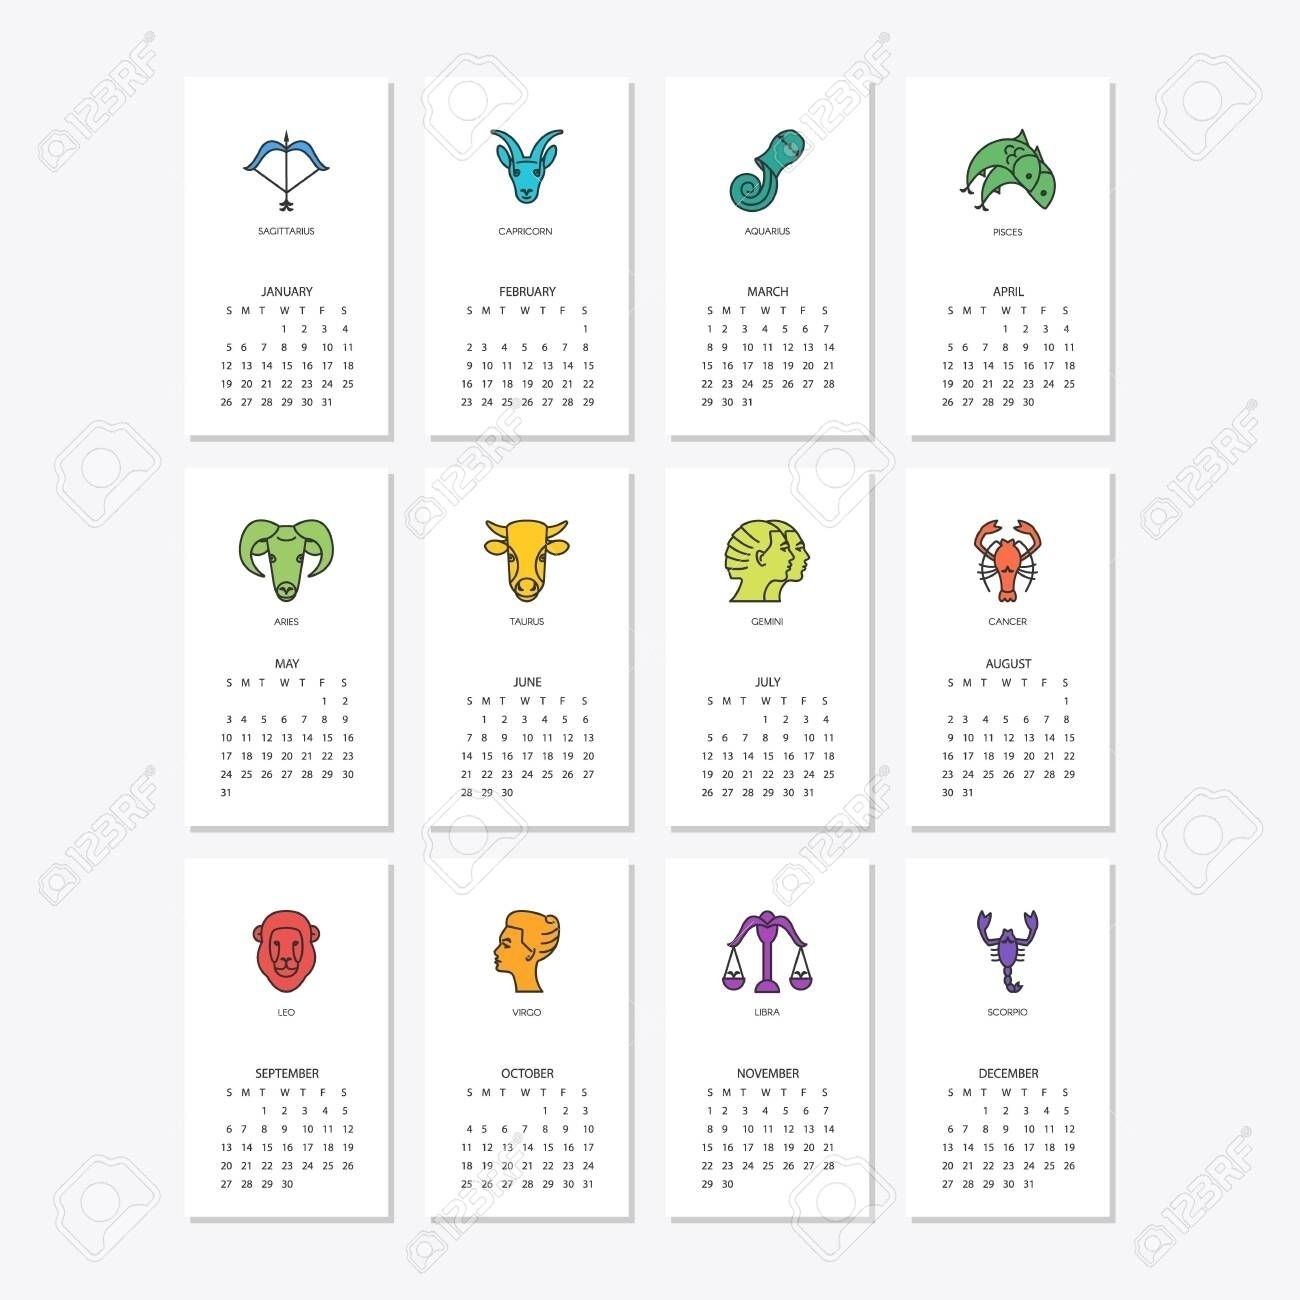 Zodiac Calendar Dates And Signs In 2020 | Zodiac Signs Zodiac Calendar Dates And Signs